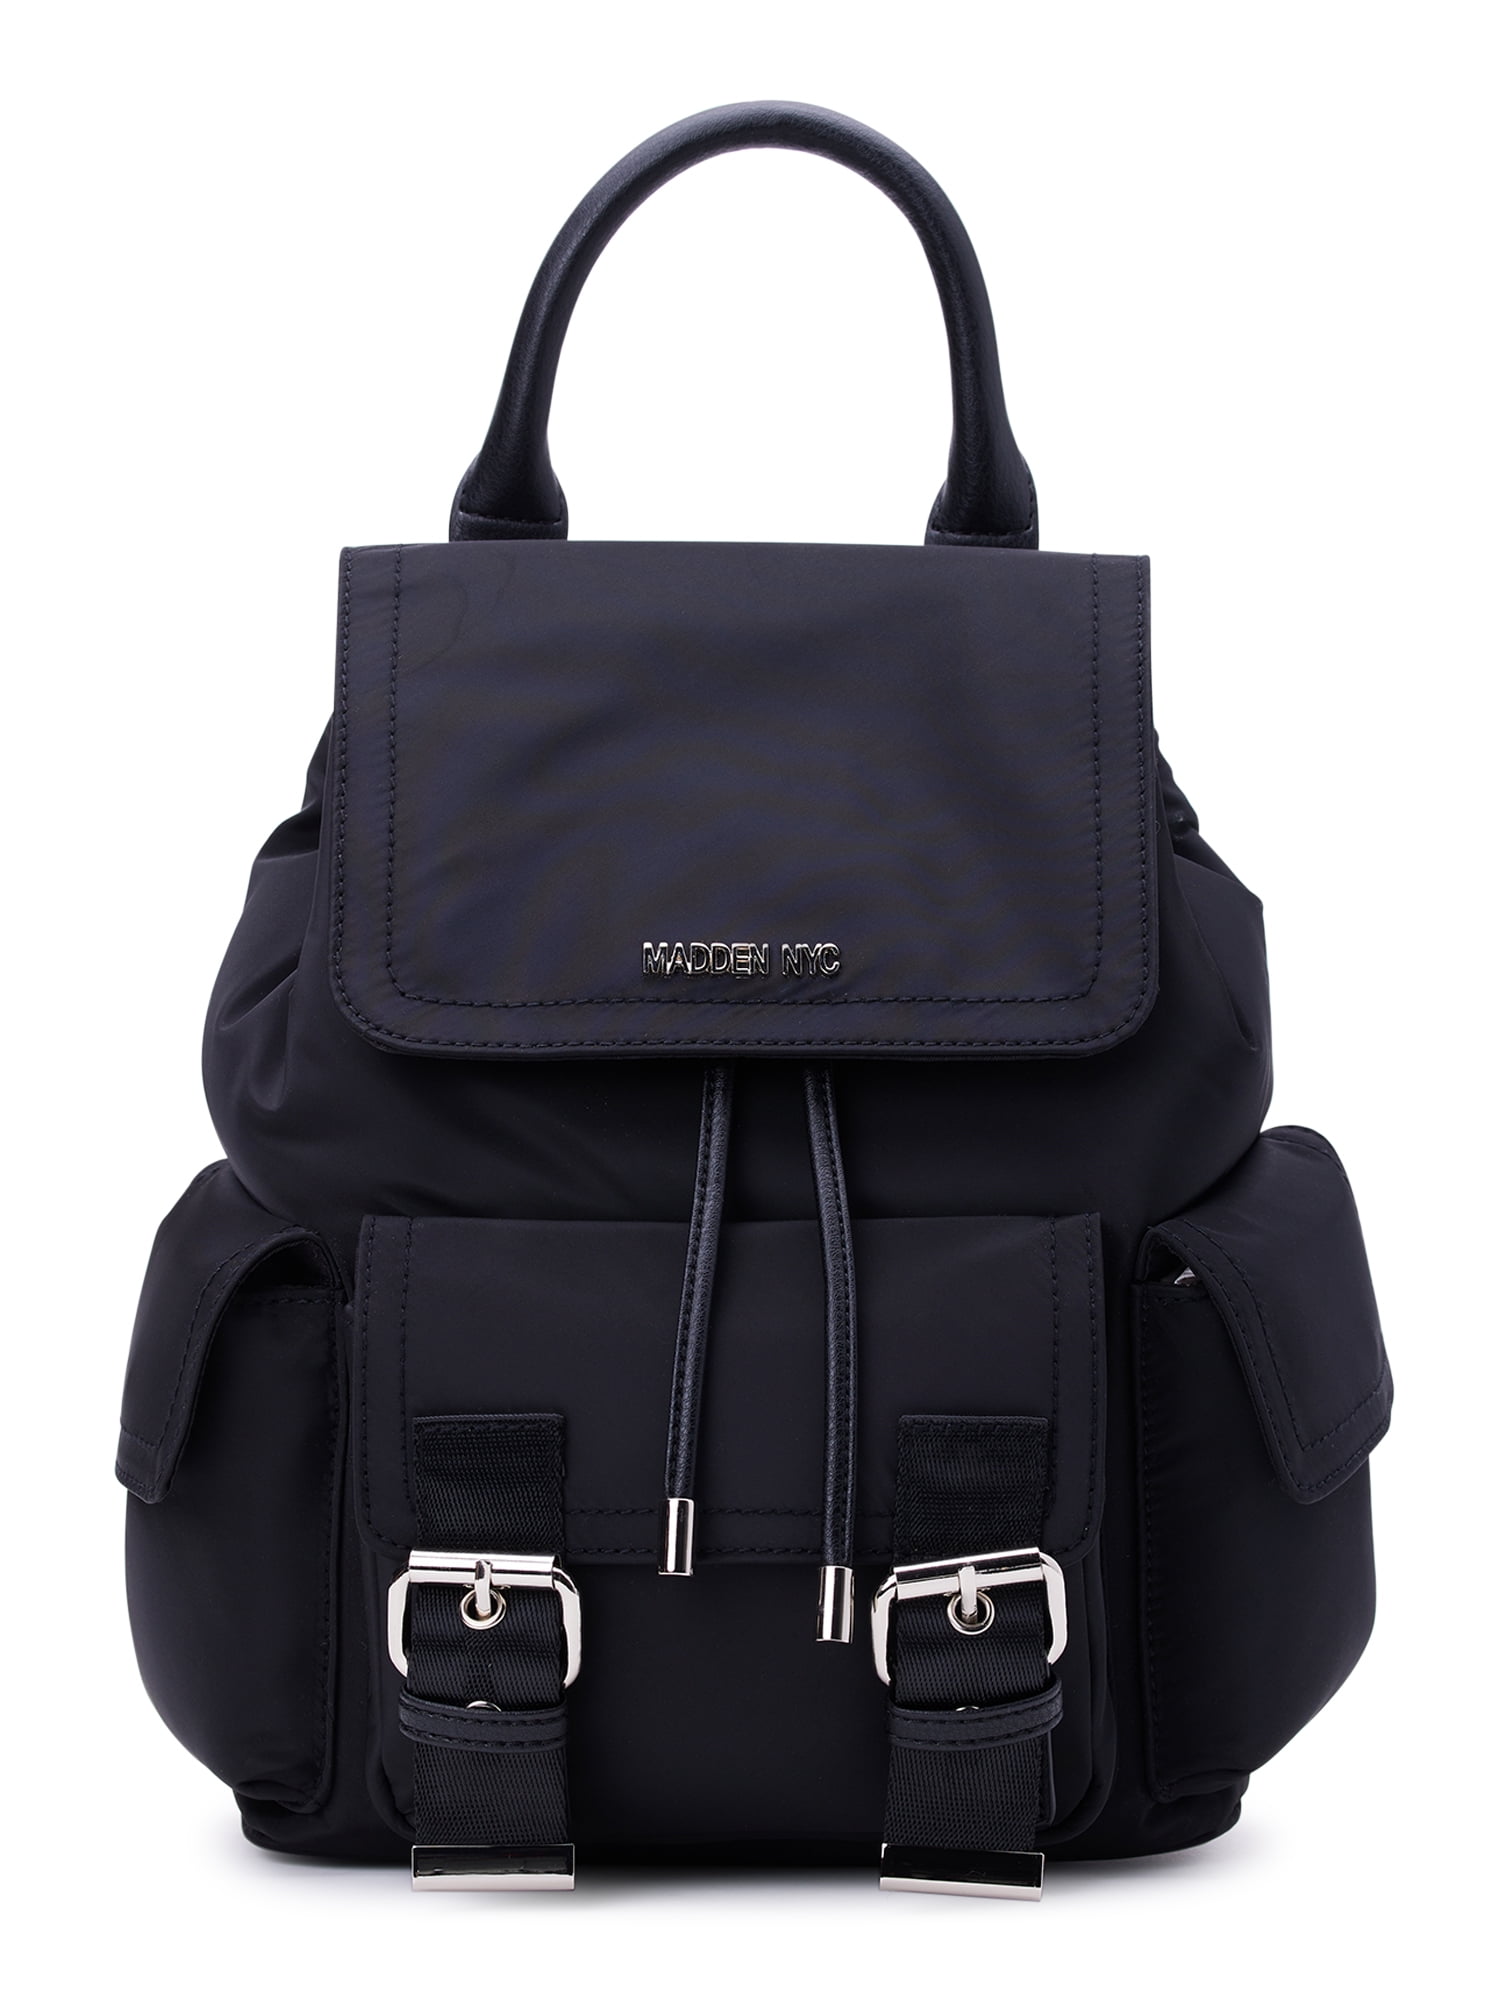 Puntoco Clearance Backpack Upgrade Handbags Wallet Tote Bag Shoulder Bag  Top Handle Satchel Purse Set 4Pcs - Walmart.com